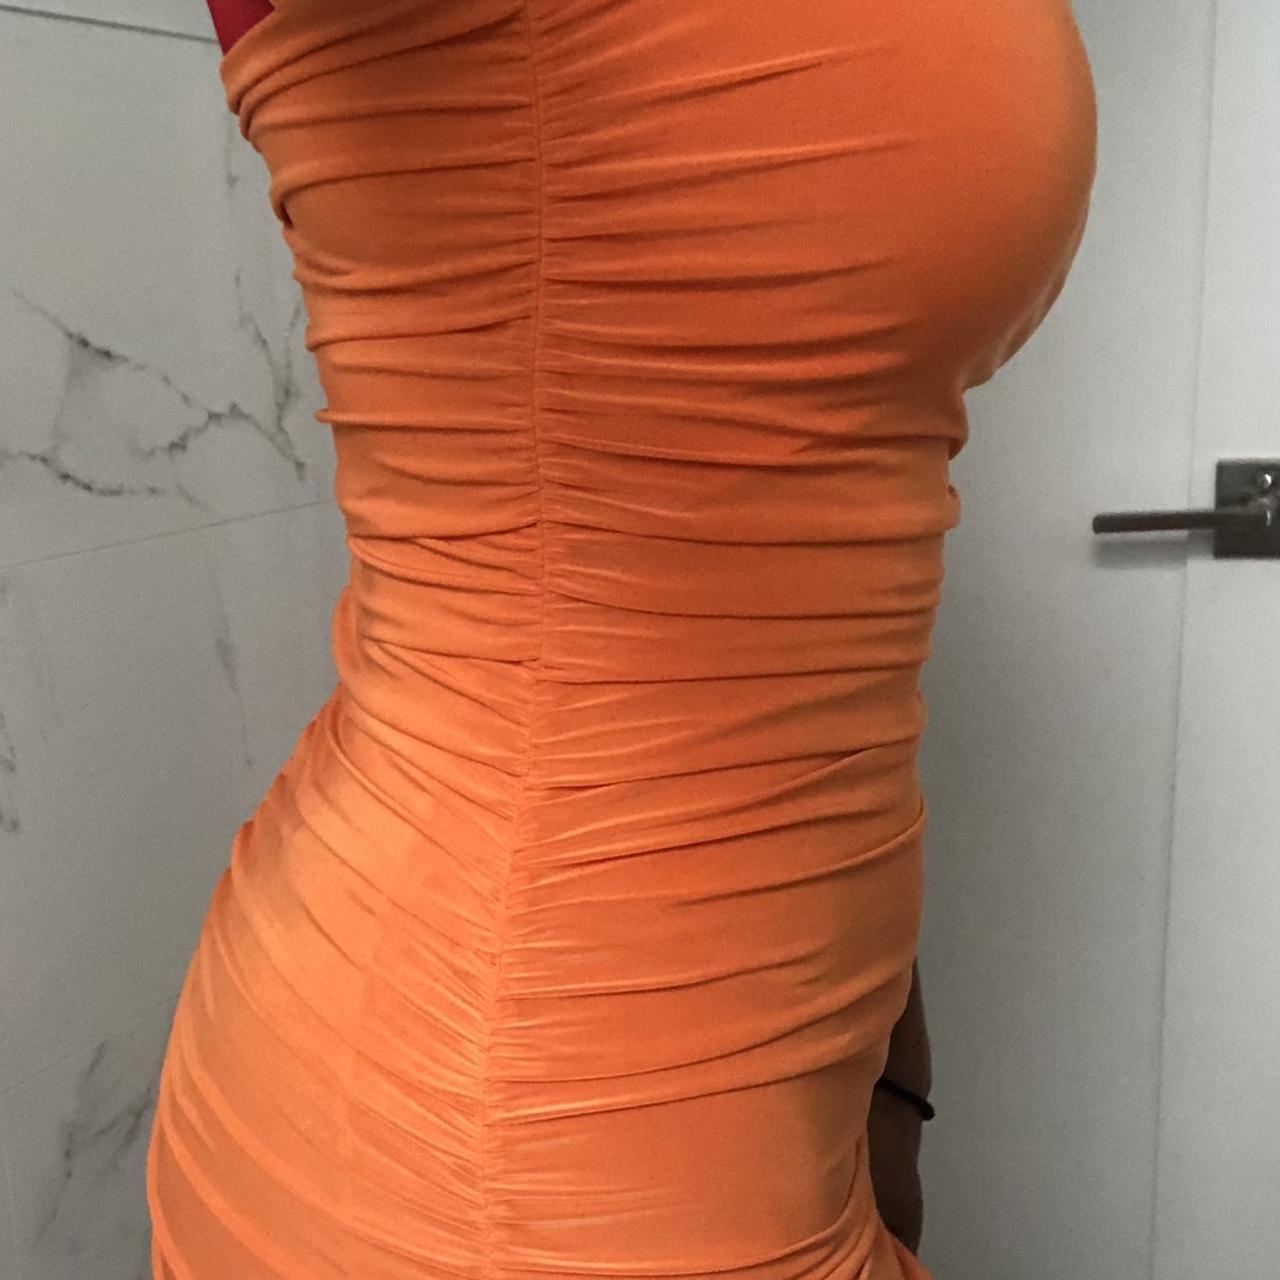 Femme Luxe Women's Orange Dress (2)